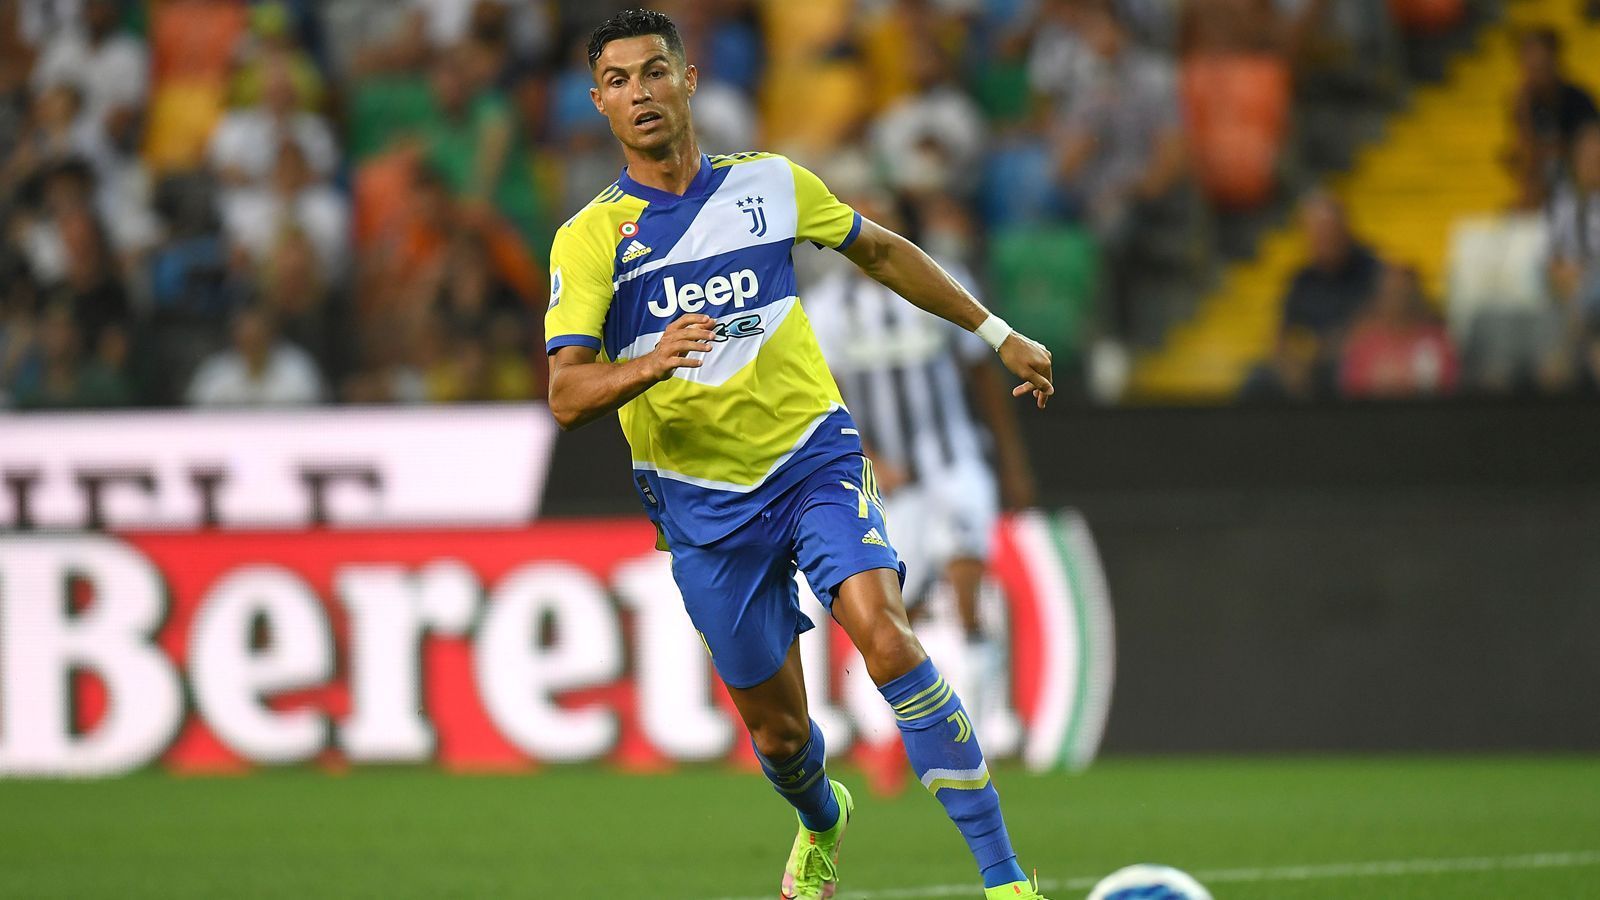 
                <strong>Platz 2 - Cristiano Ronaldo (Manchester United)</strong><br>
                &#x2022; Wochengehalt: 452.063 Euro (385.000 Pfund) - <br>&#x2022; Vertrag bis: 2023 (voraussichtlich) - <br>&#x2022; Position: Mittelstürmer<br>
              